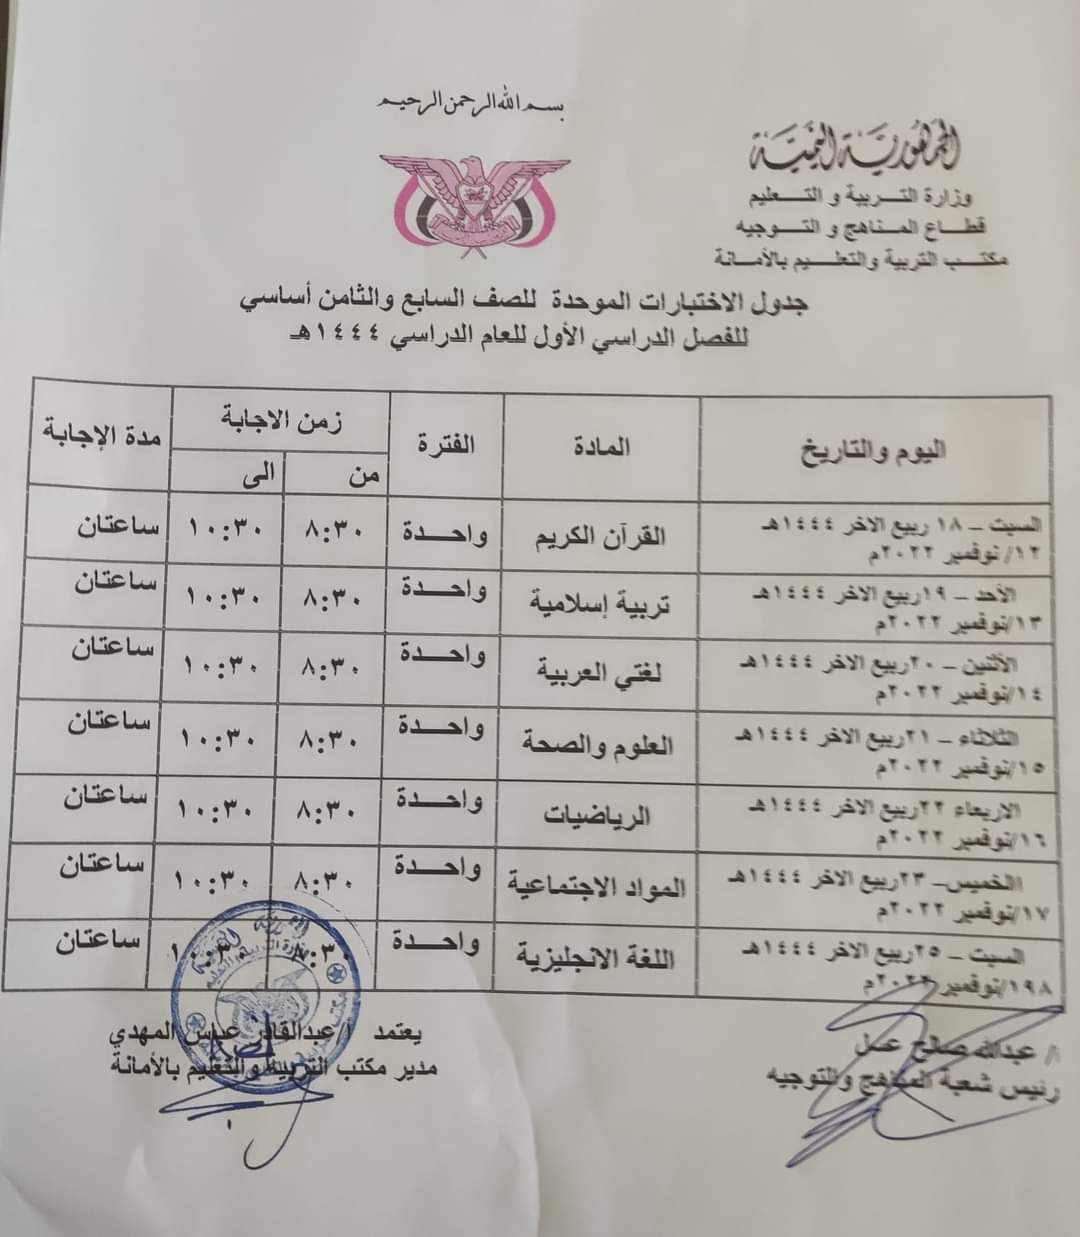 جدول الاختبارات الموحدة في امانة العاصمة صنعاء للصف الثامن والتاسع اساسي